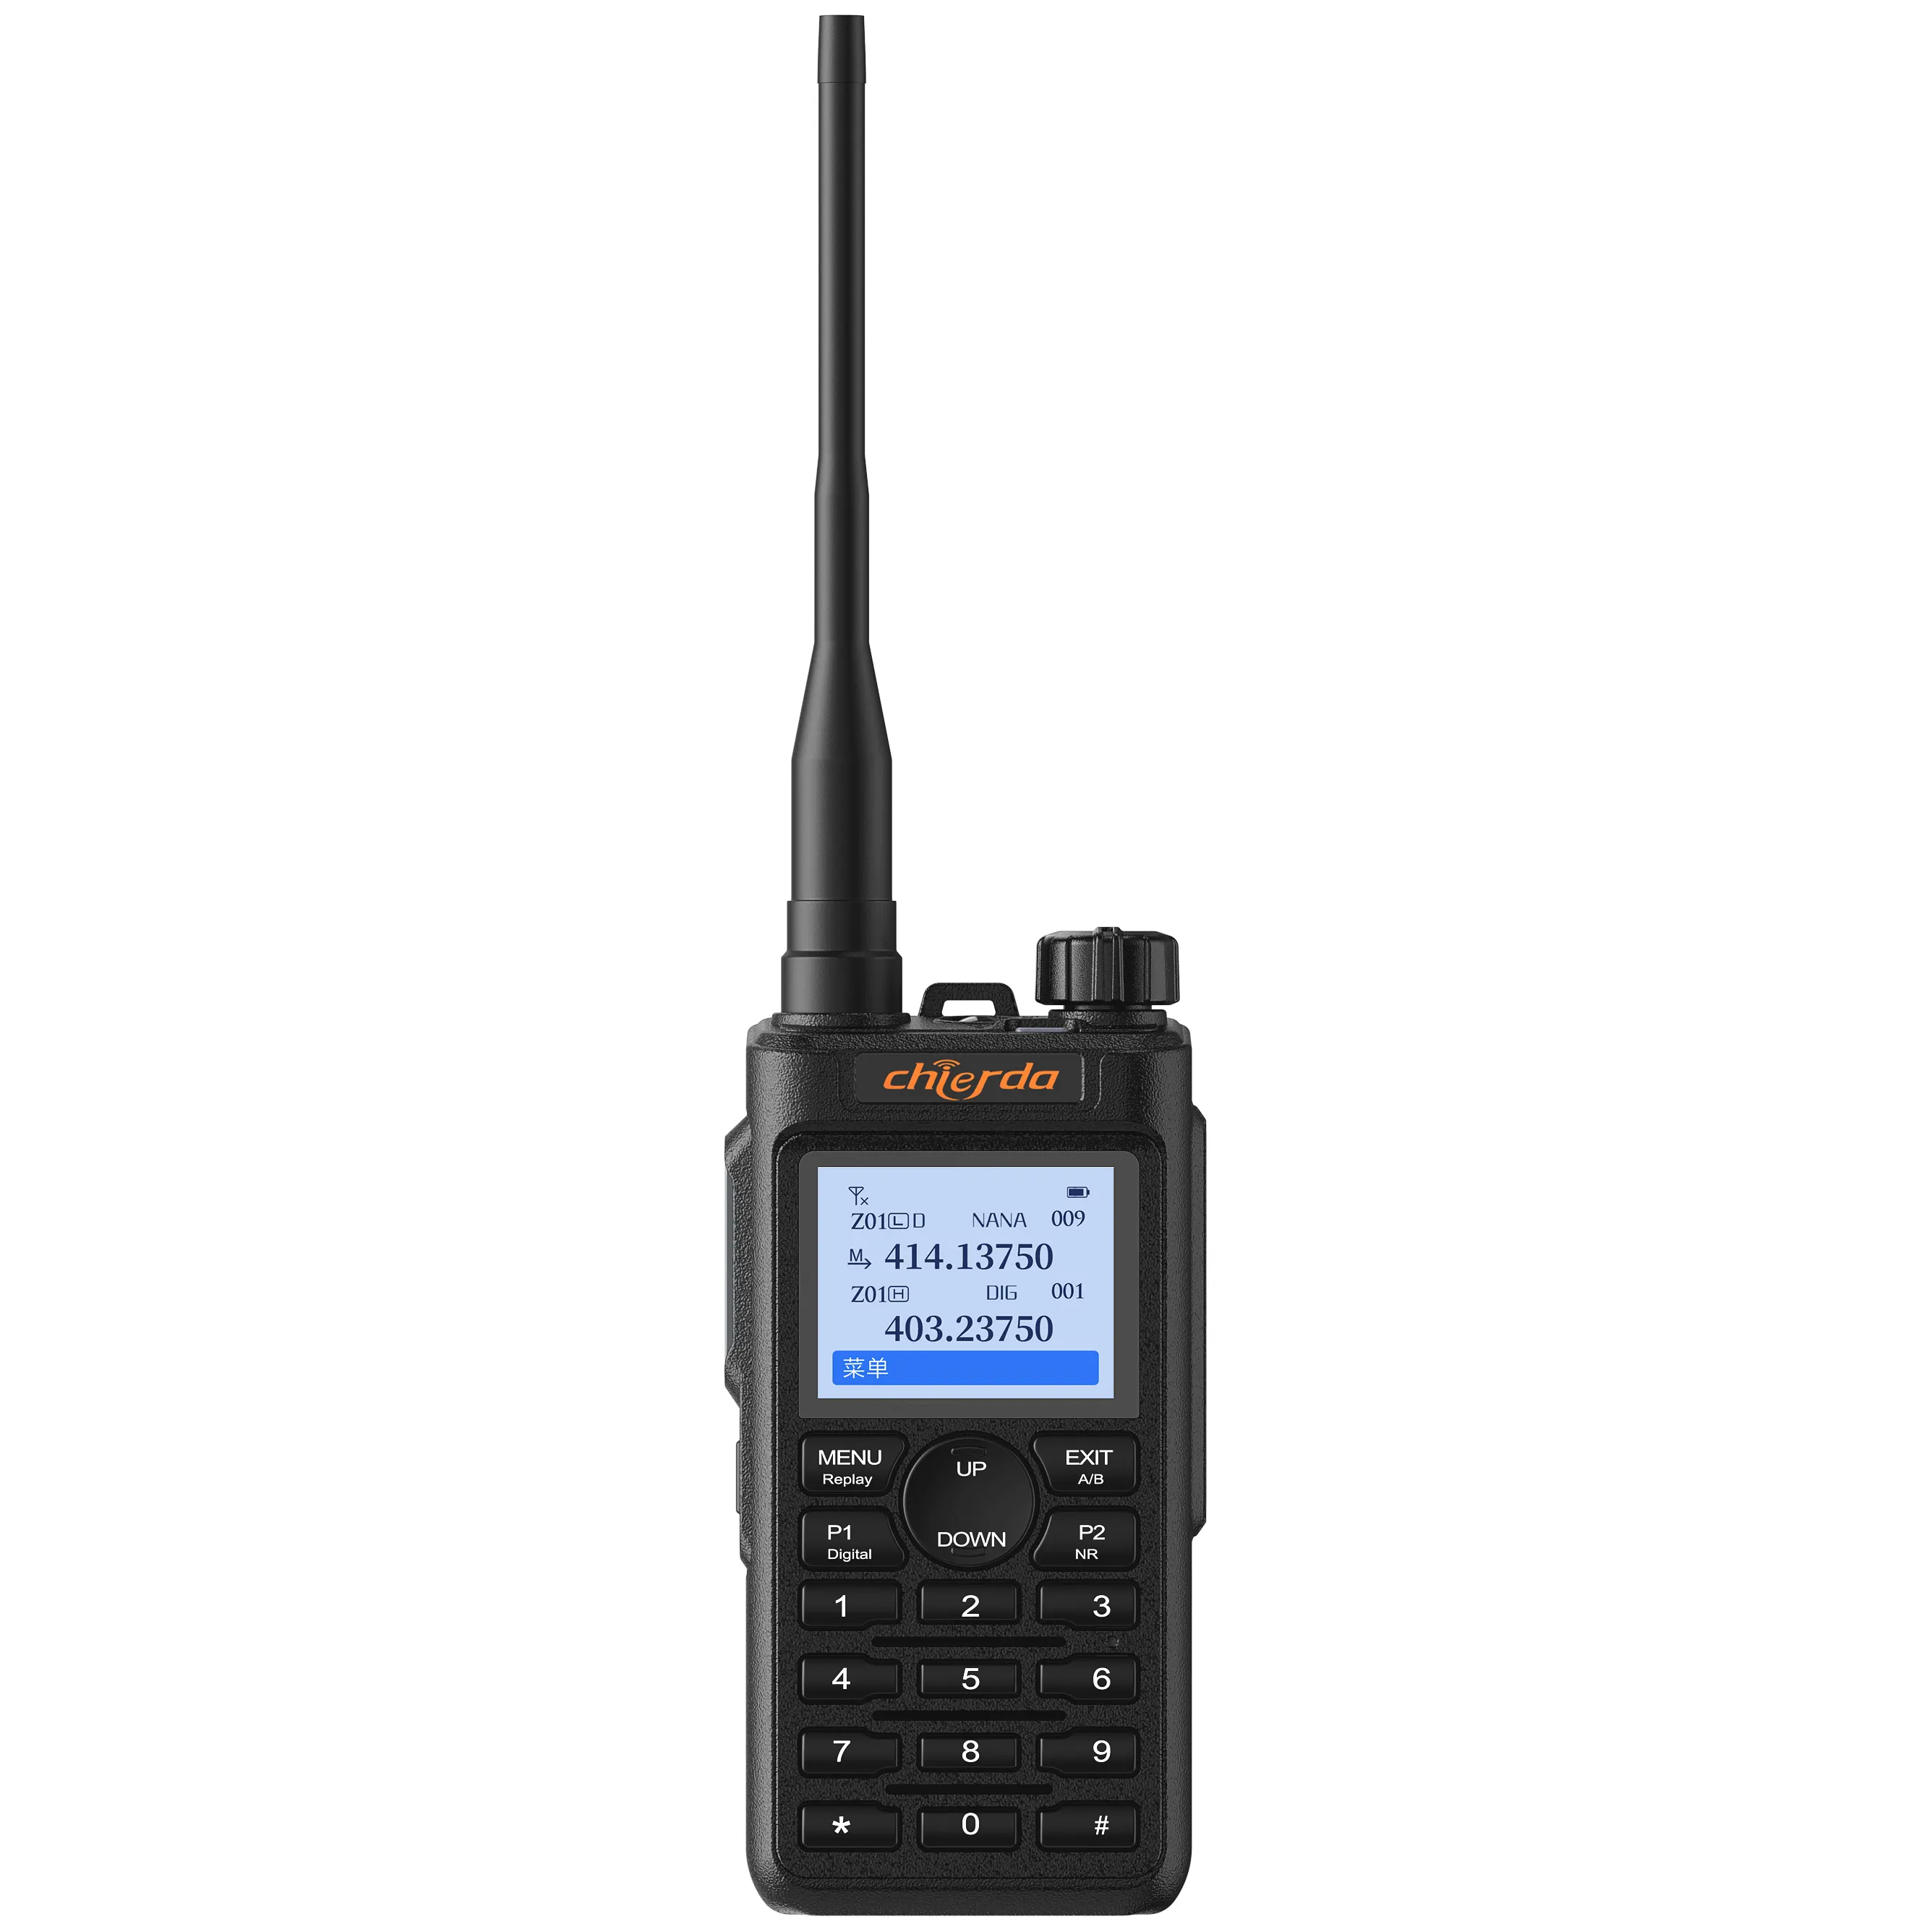 Chierda UV58D DMR Radio amatir, walkie talkie 5km dengan enkripsi aes256